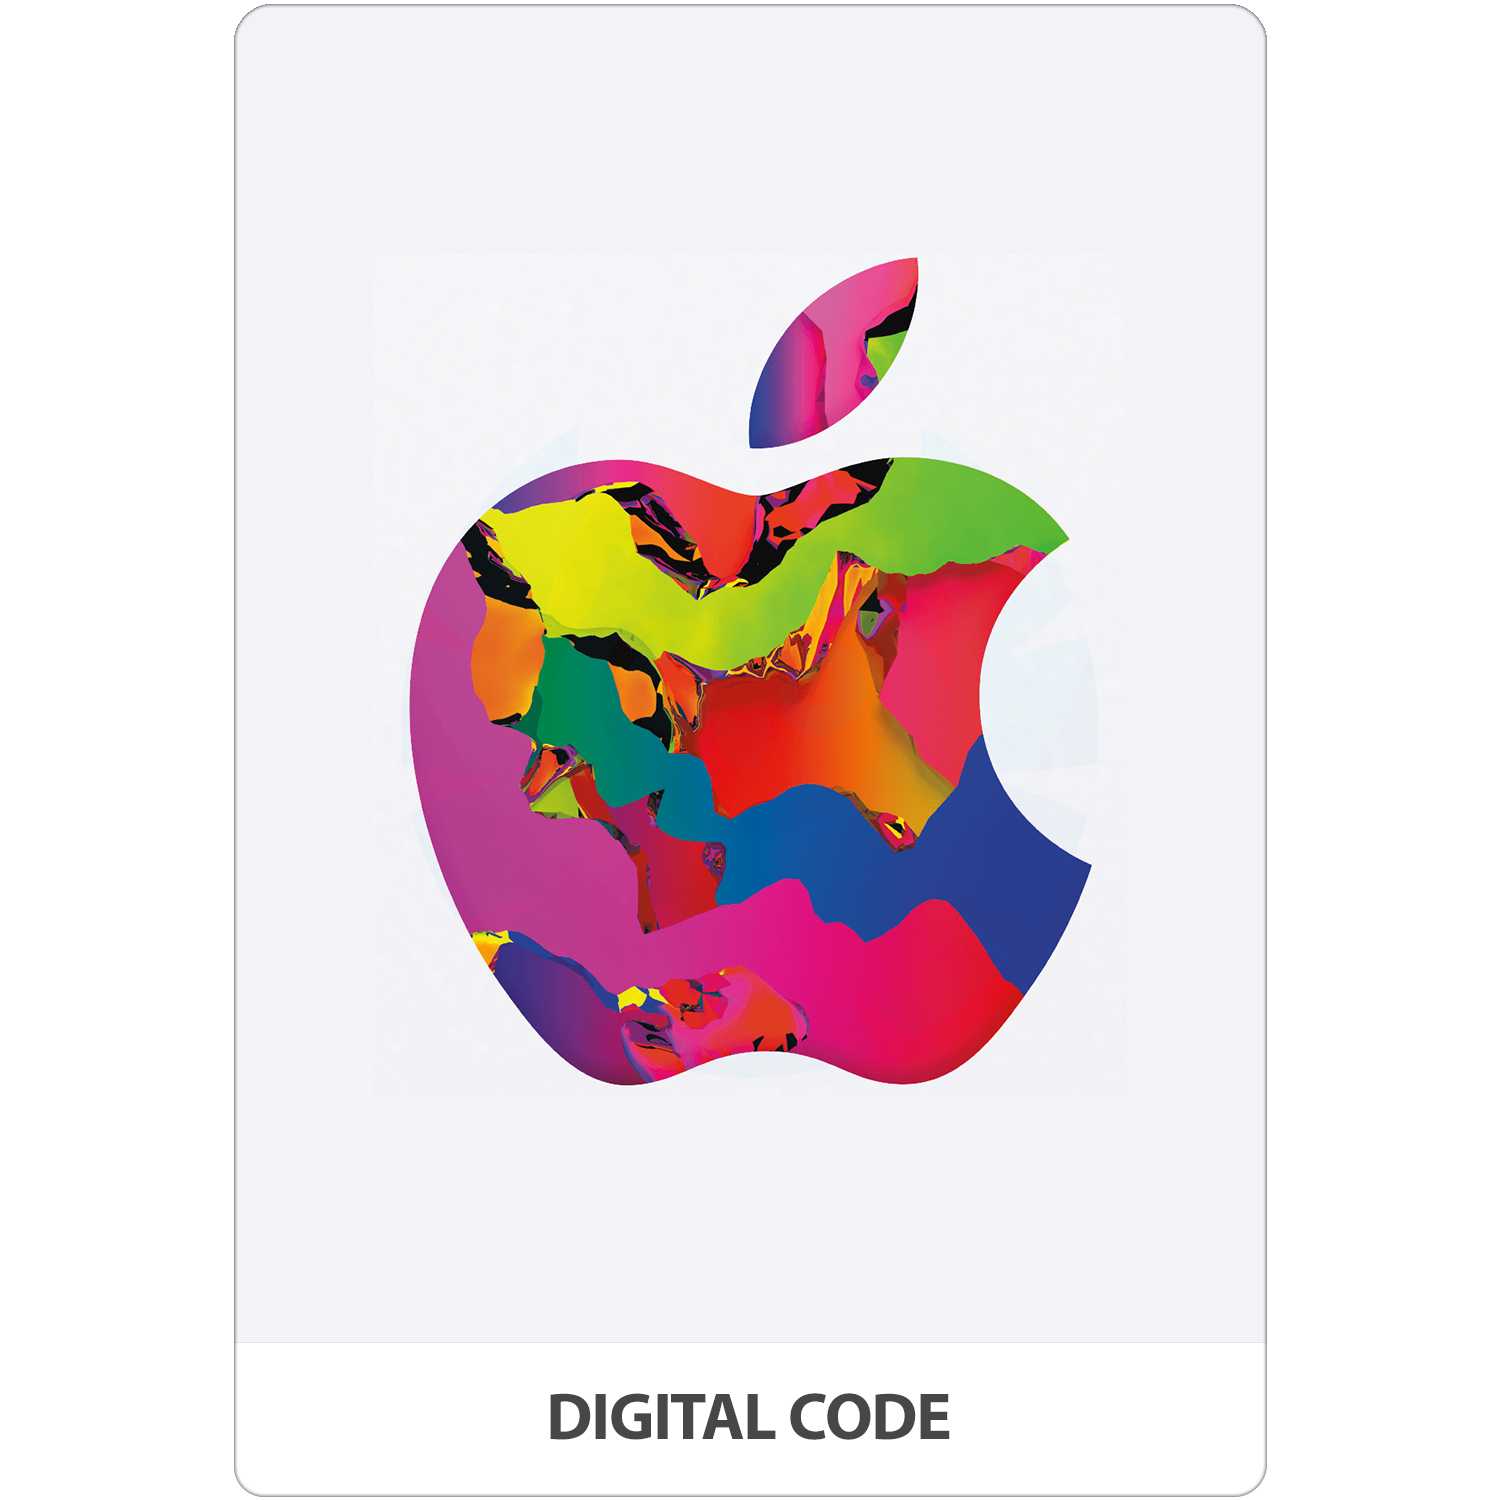 Acquiesce In de omgeving van Verzorgen Buy iTunes Gift Card 25 TL | Instant Email Delivery | TURKEY